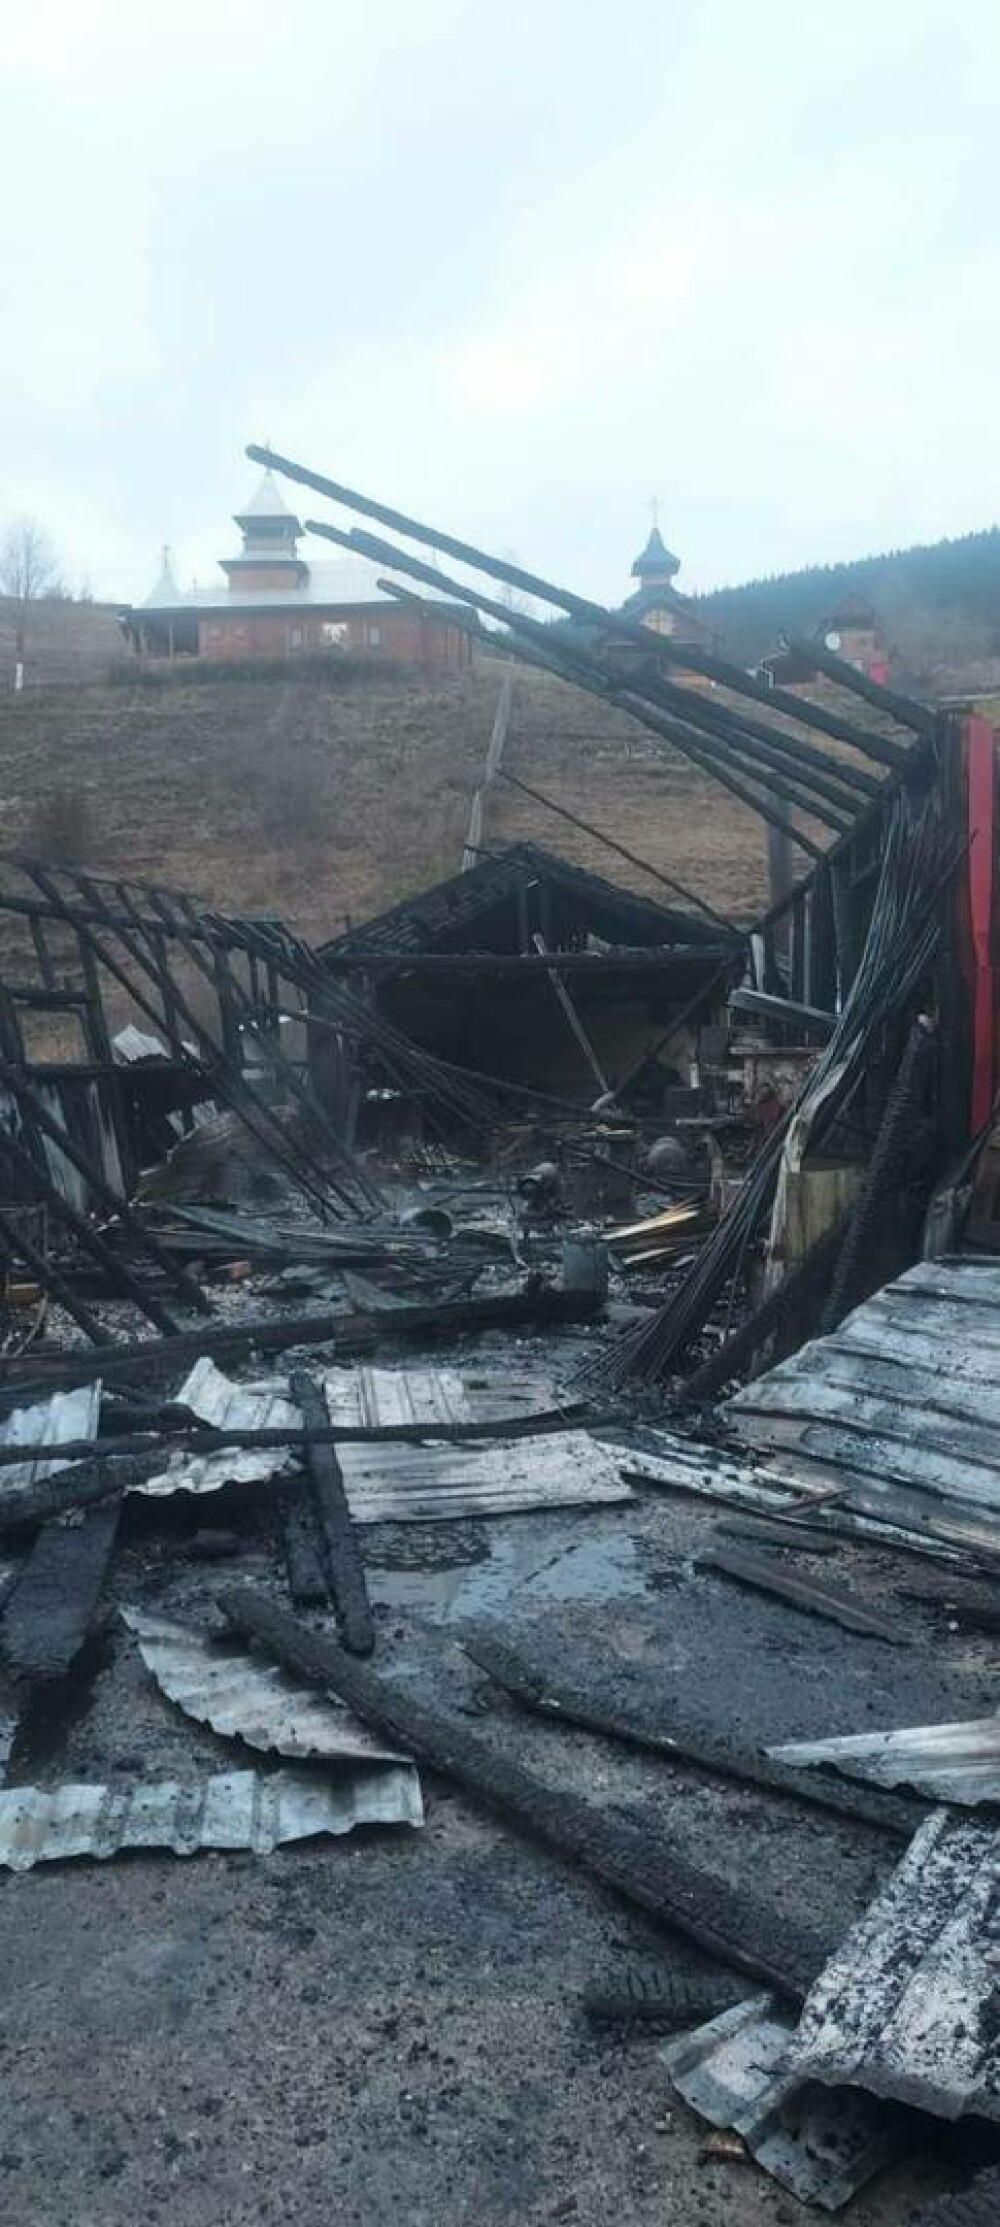 Incendiu violent la hala unui gater din Toplița. Pompierii au reuşit localizarea şi intervin pentru stingerea focului - Imaginea 2